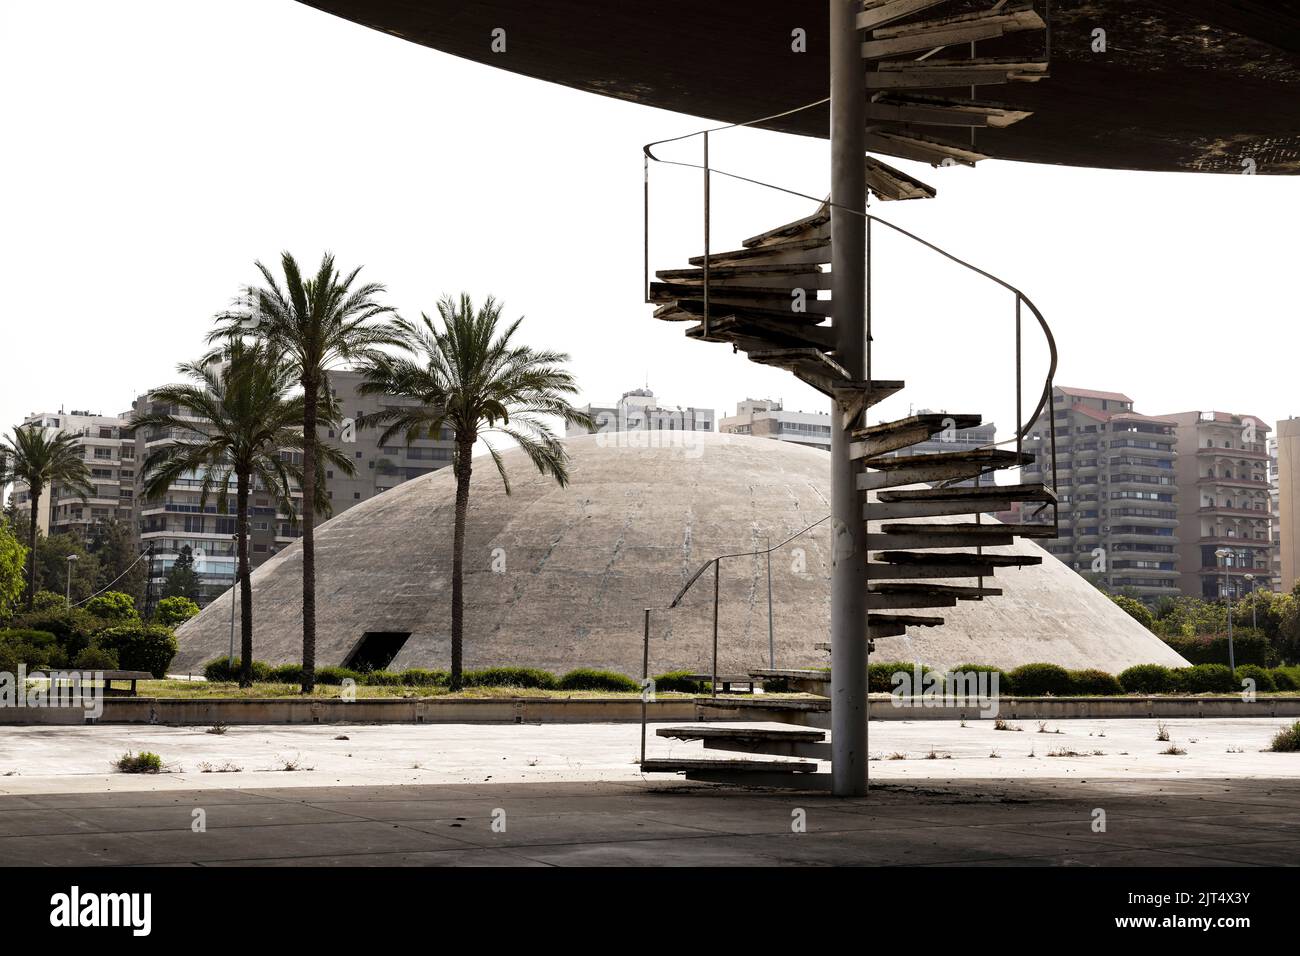 El arquitecto Oscar Niemeyer diseñó los edificios del centro de exposiciones Rashid Karami en Trípoli, pero los trabajos de construcción nunca se terminaron debido al estallido de la guerra civil. Trípoli, Líbano Foto de stock